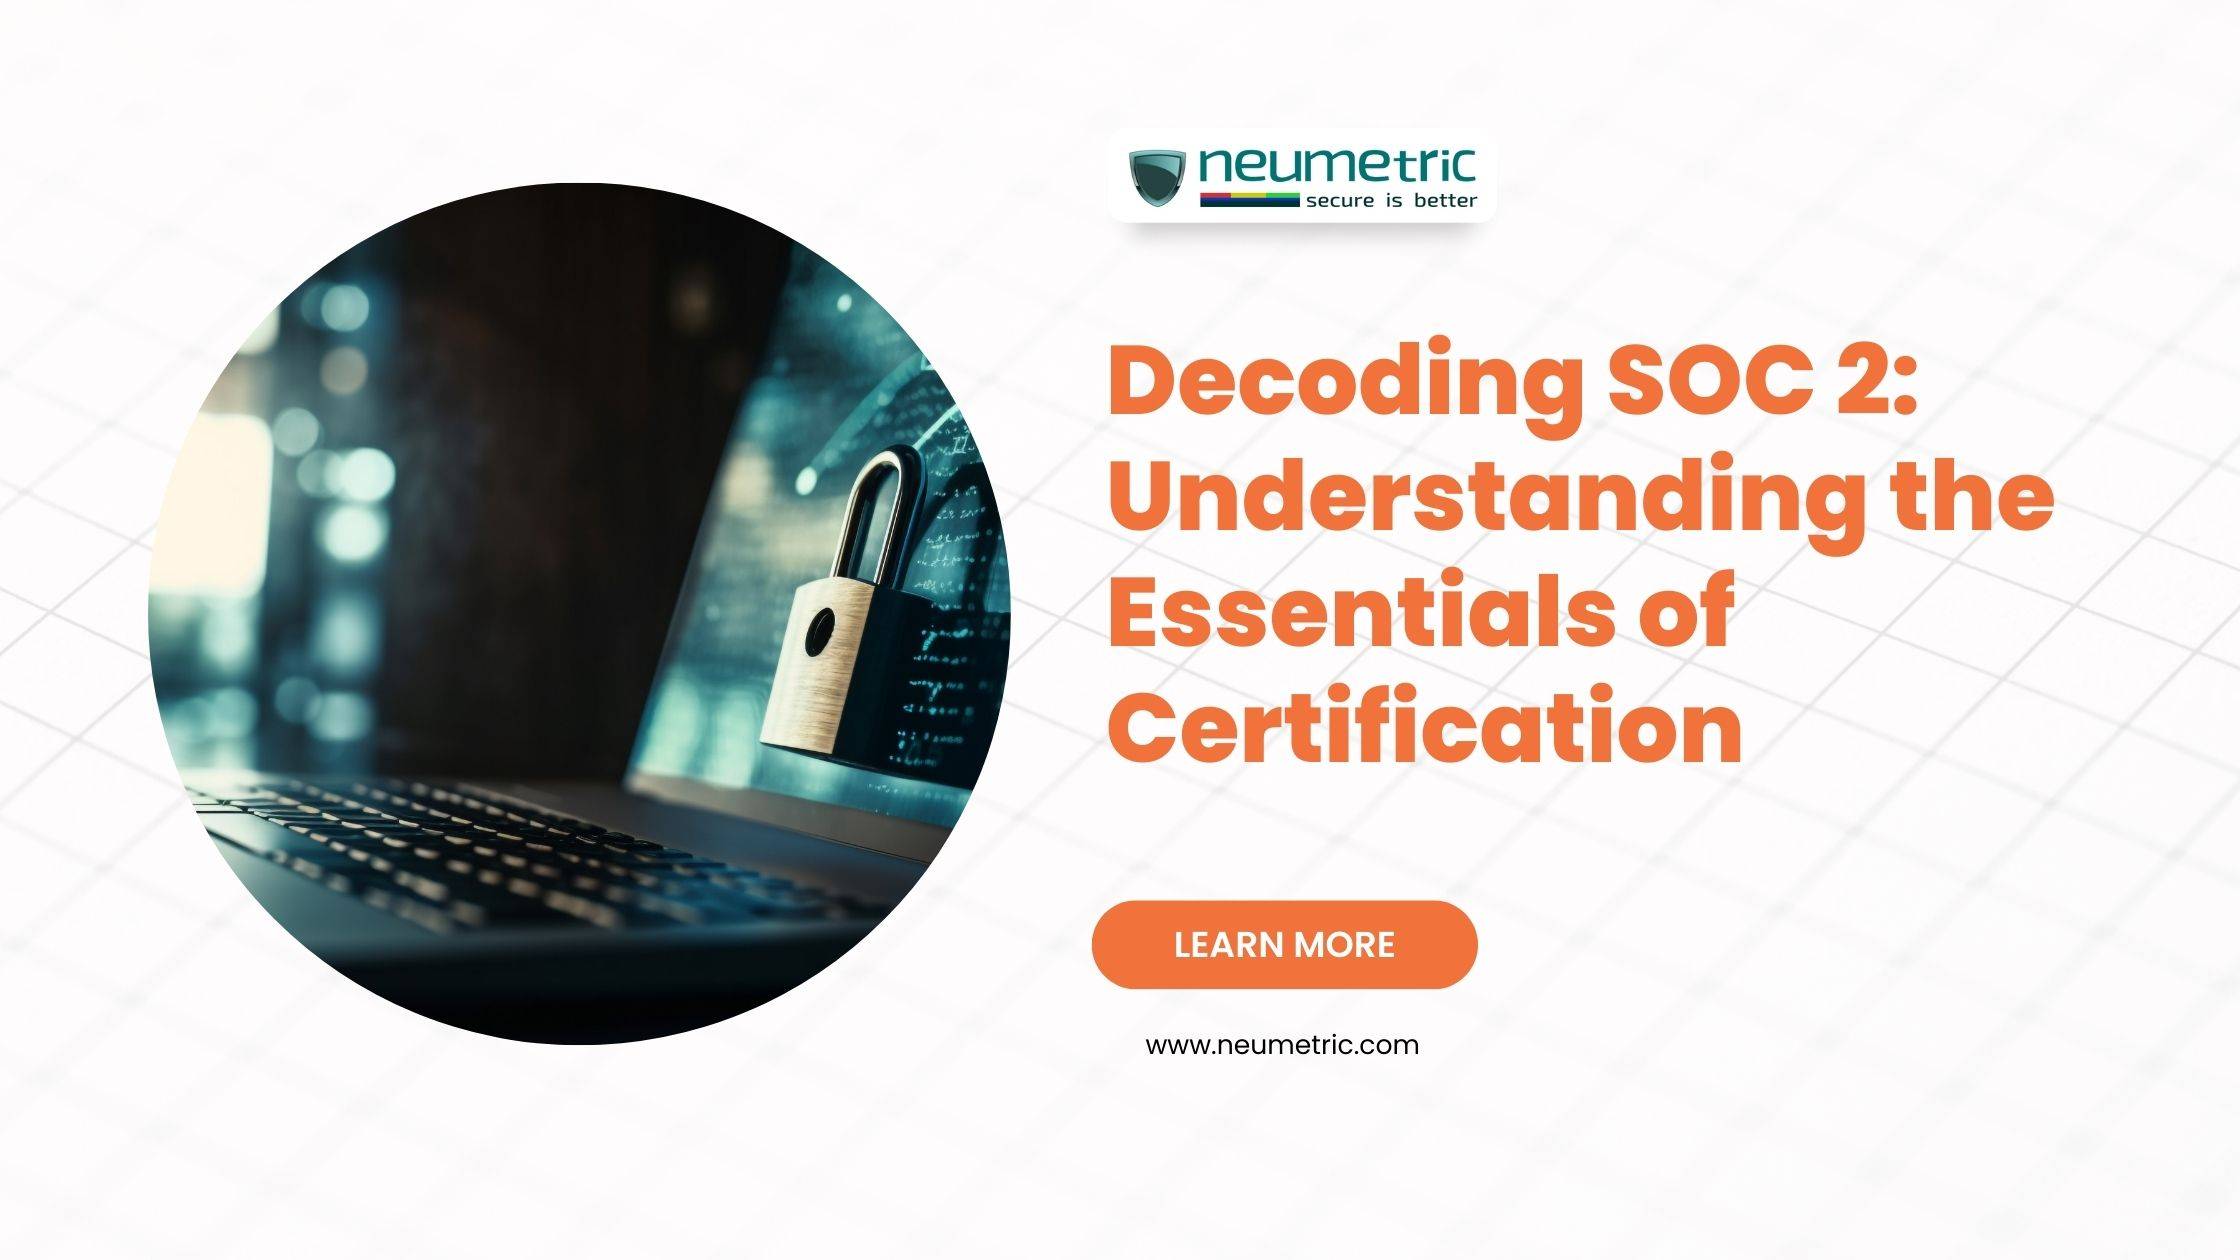 Decoding SOC 2: Understanding the Essentials of Certification